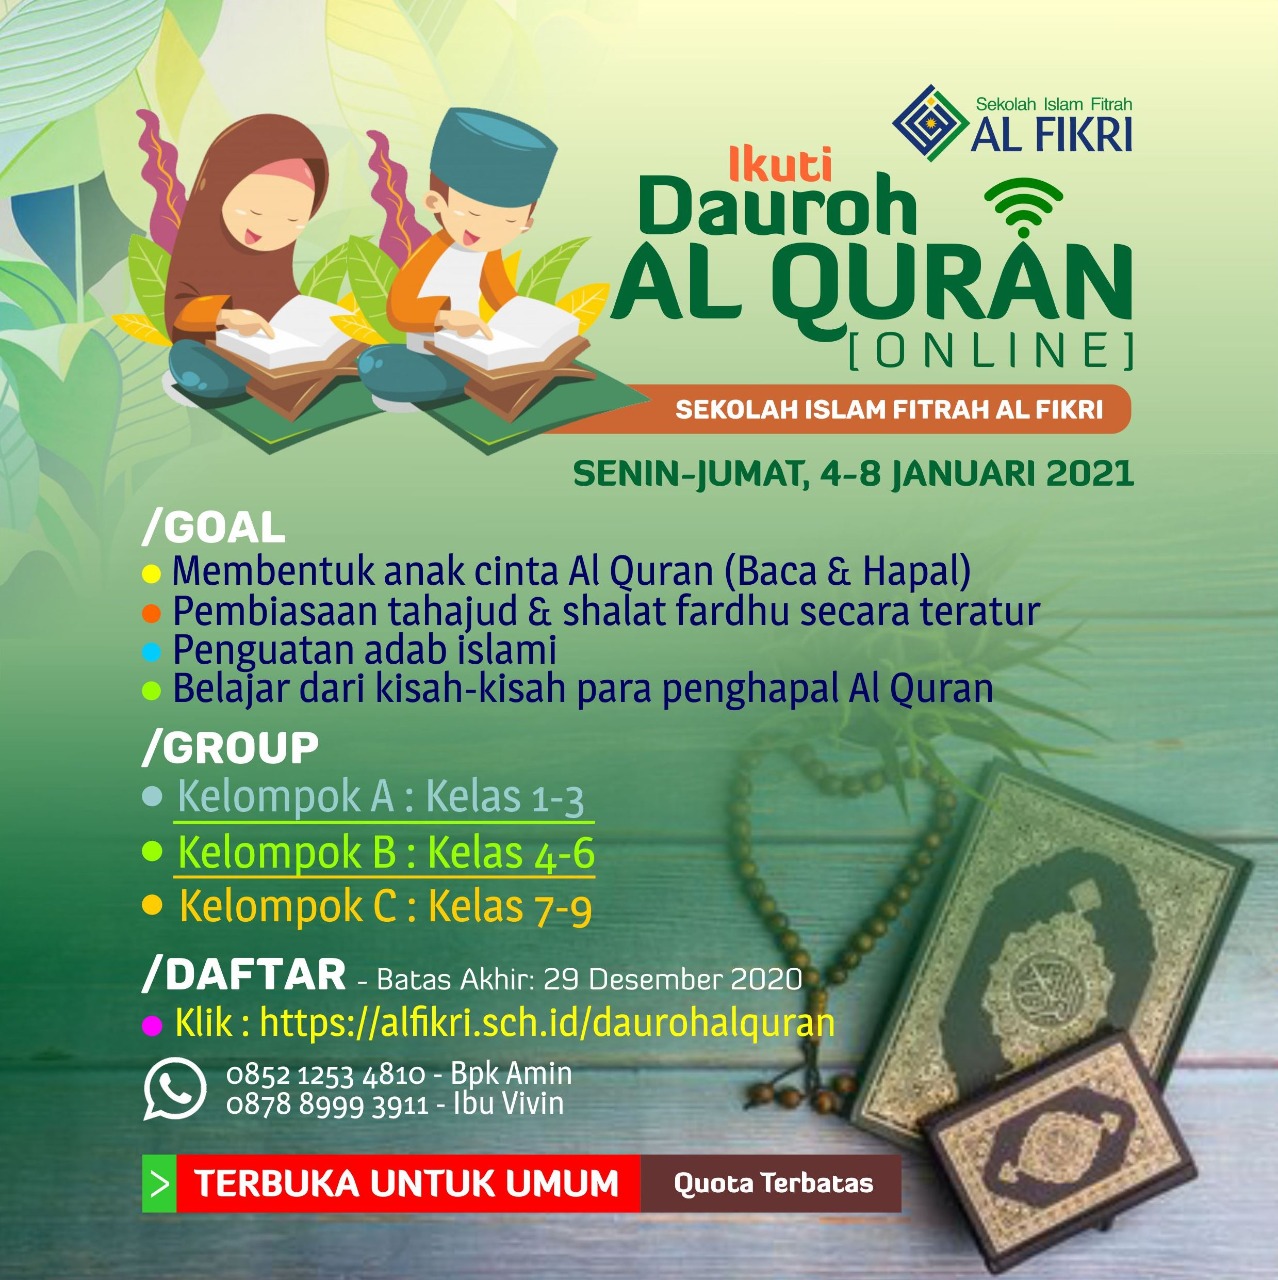 Dauroh Al Quran